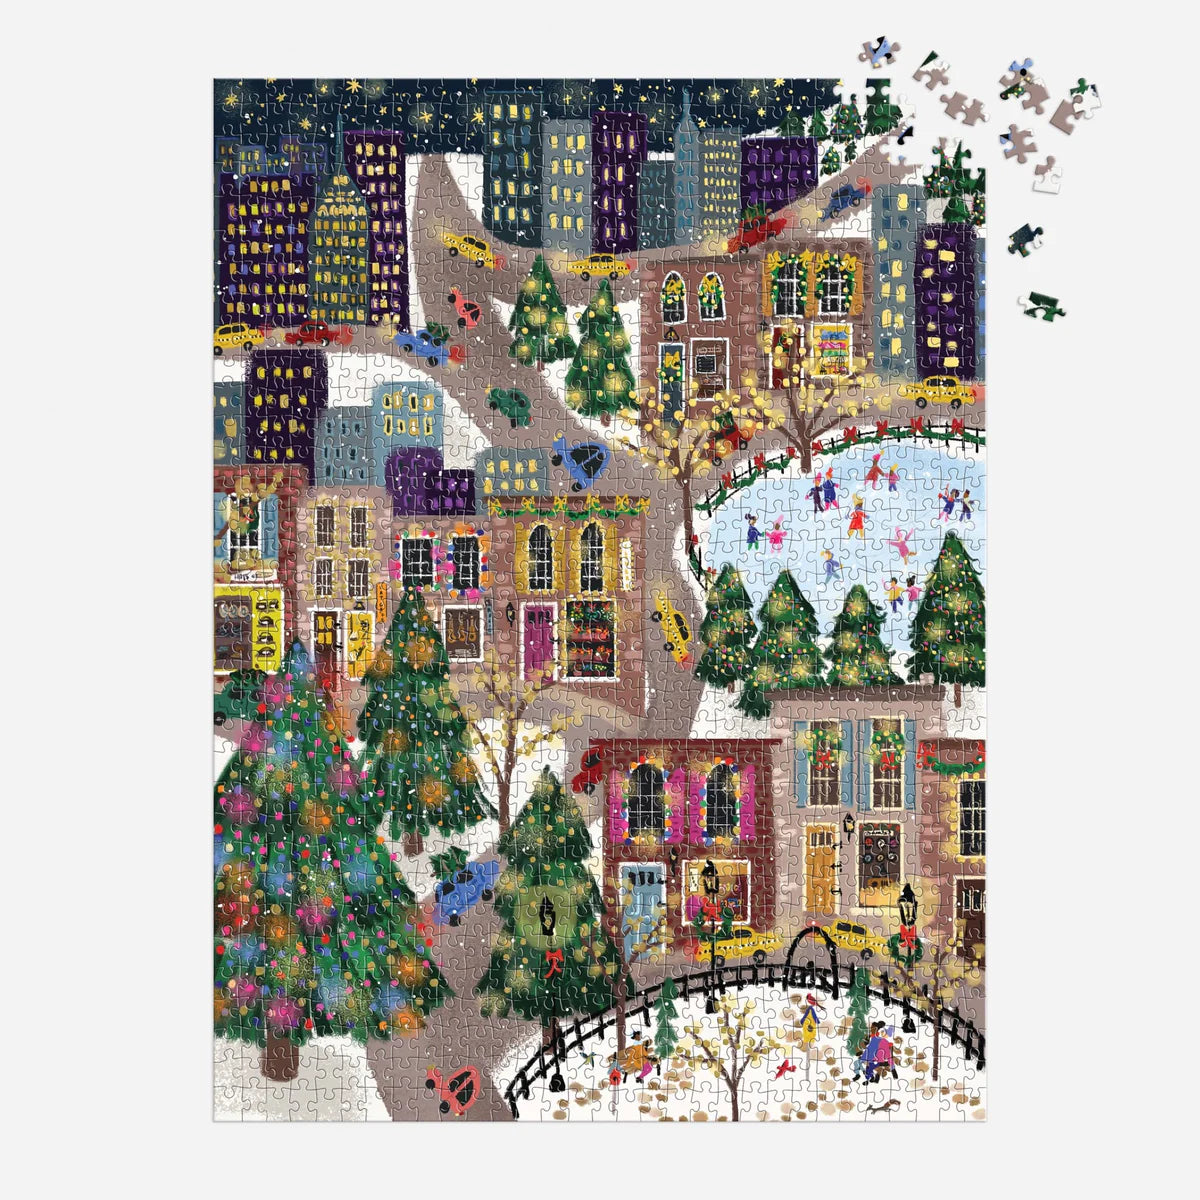 Stitch by Stitch 1000 Piece Puzzle – Galison